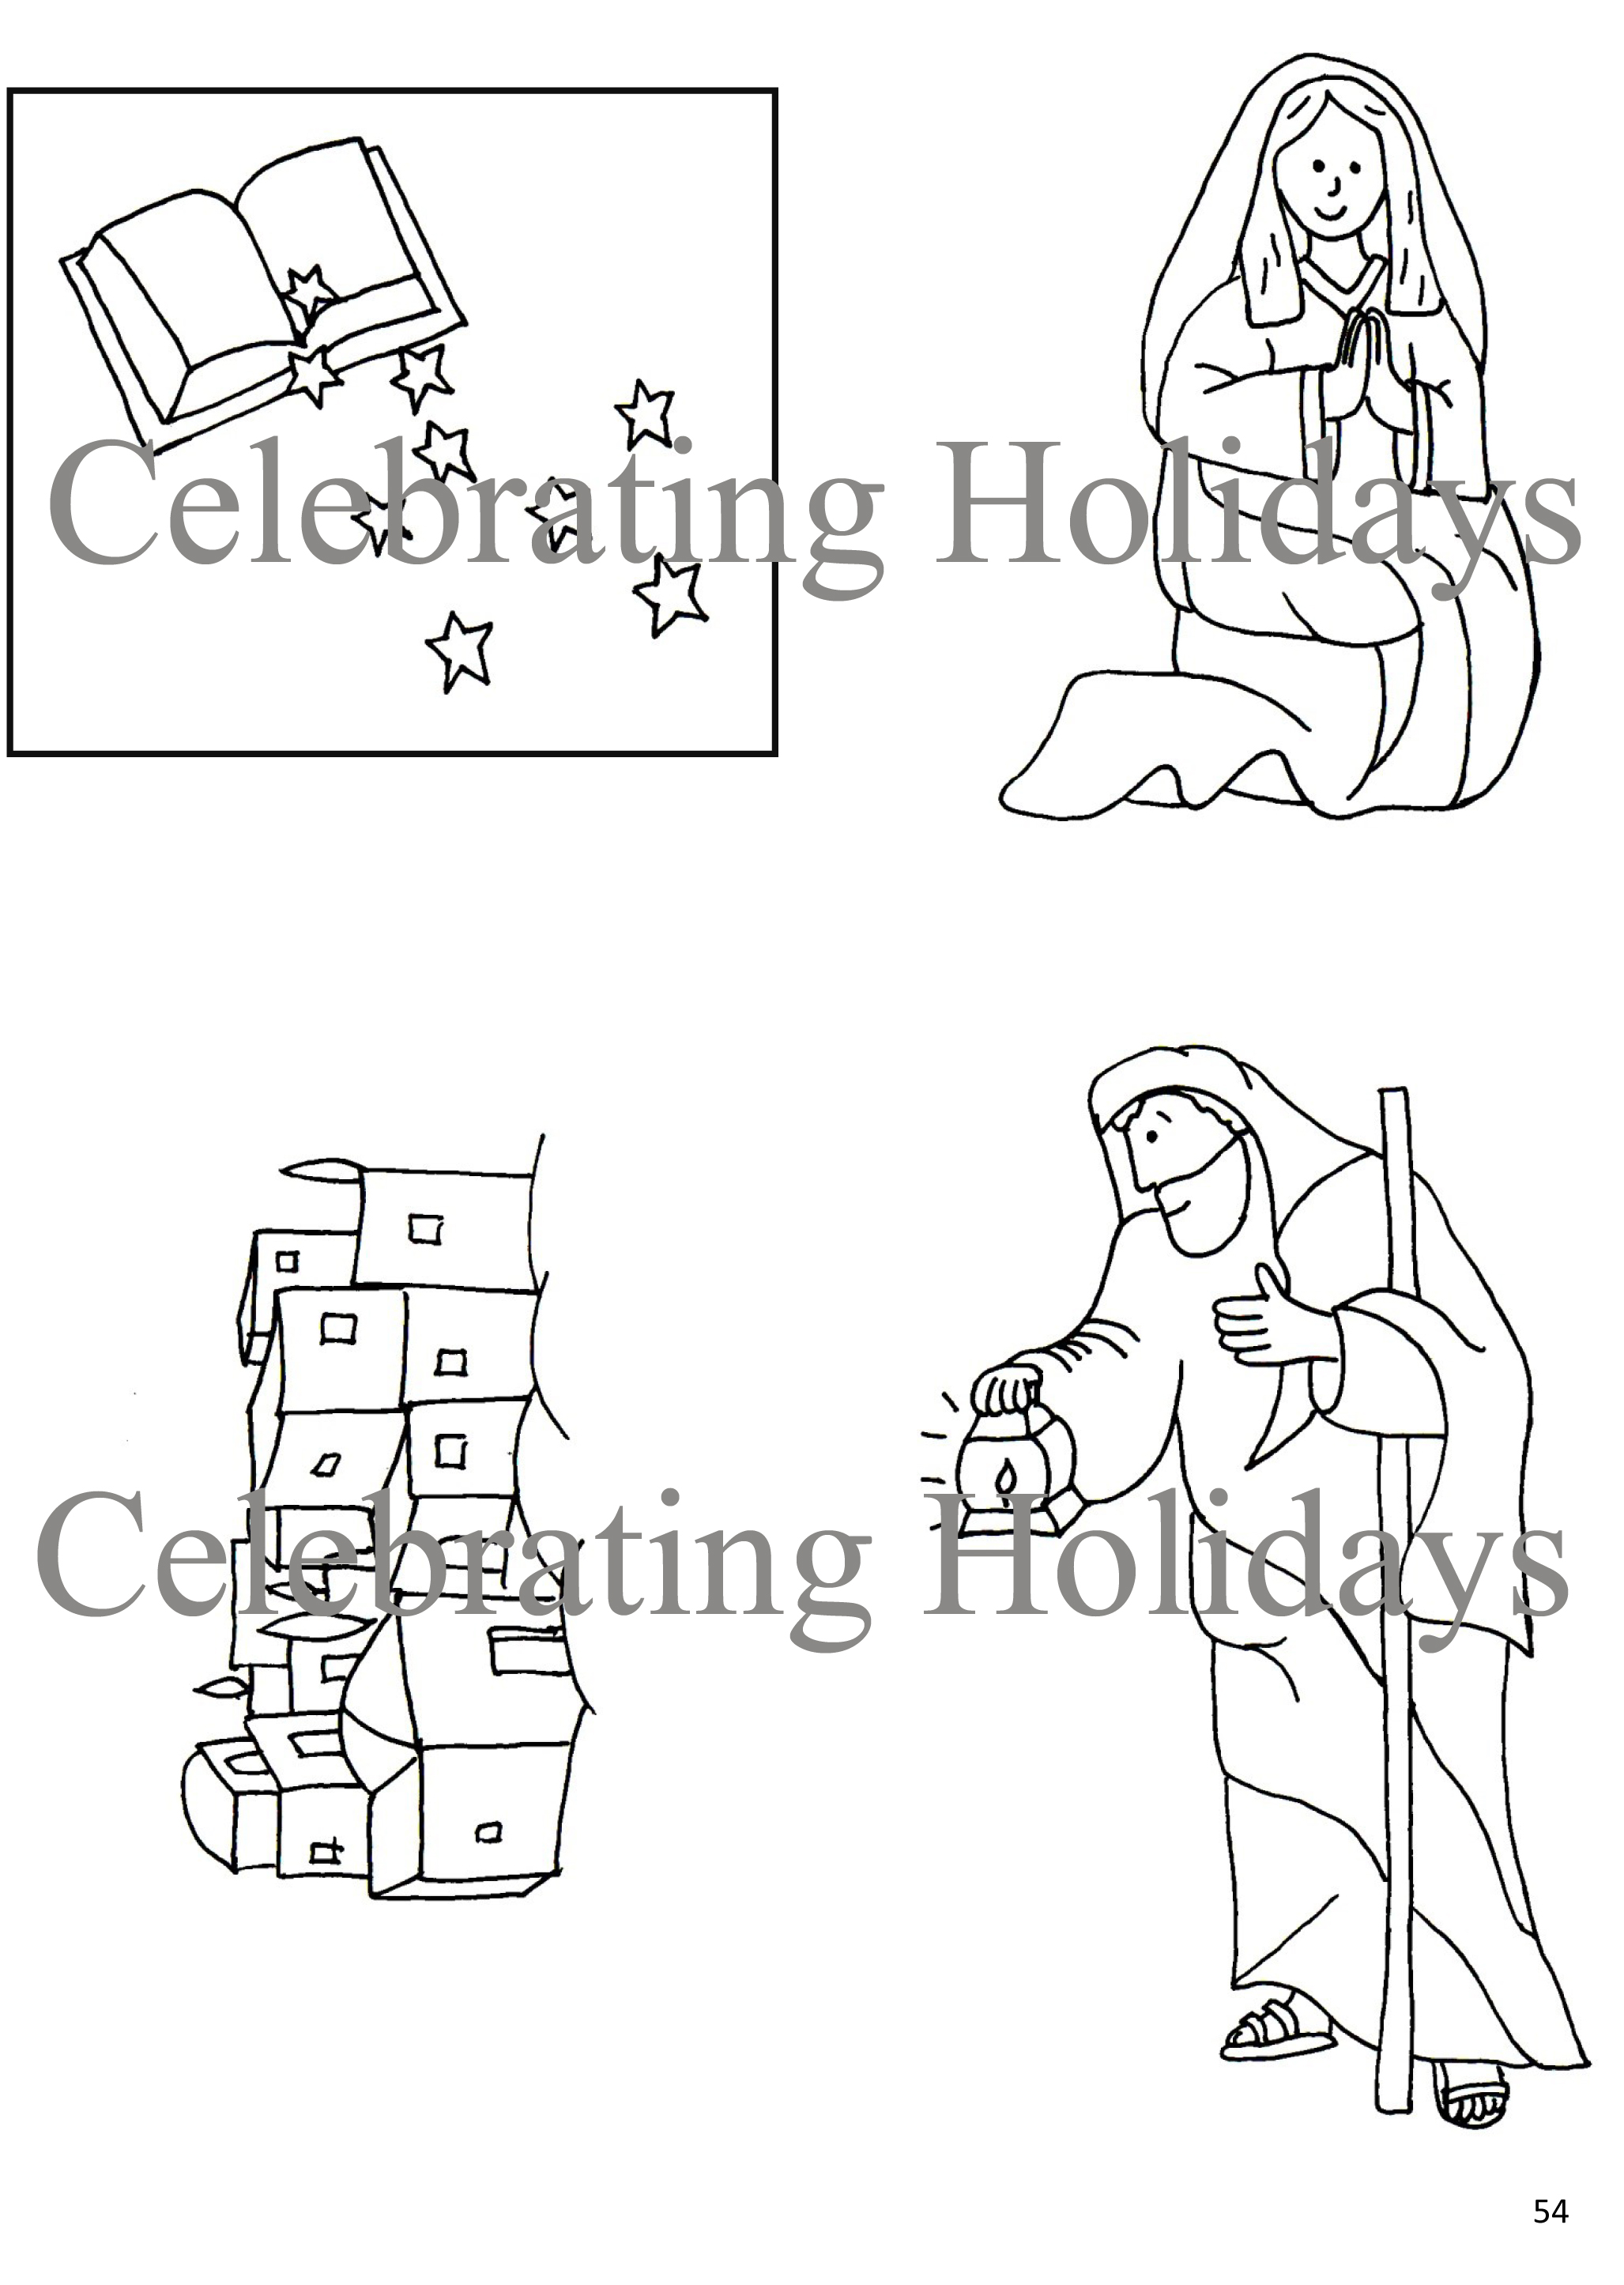 Sample Black & White Nativity Images